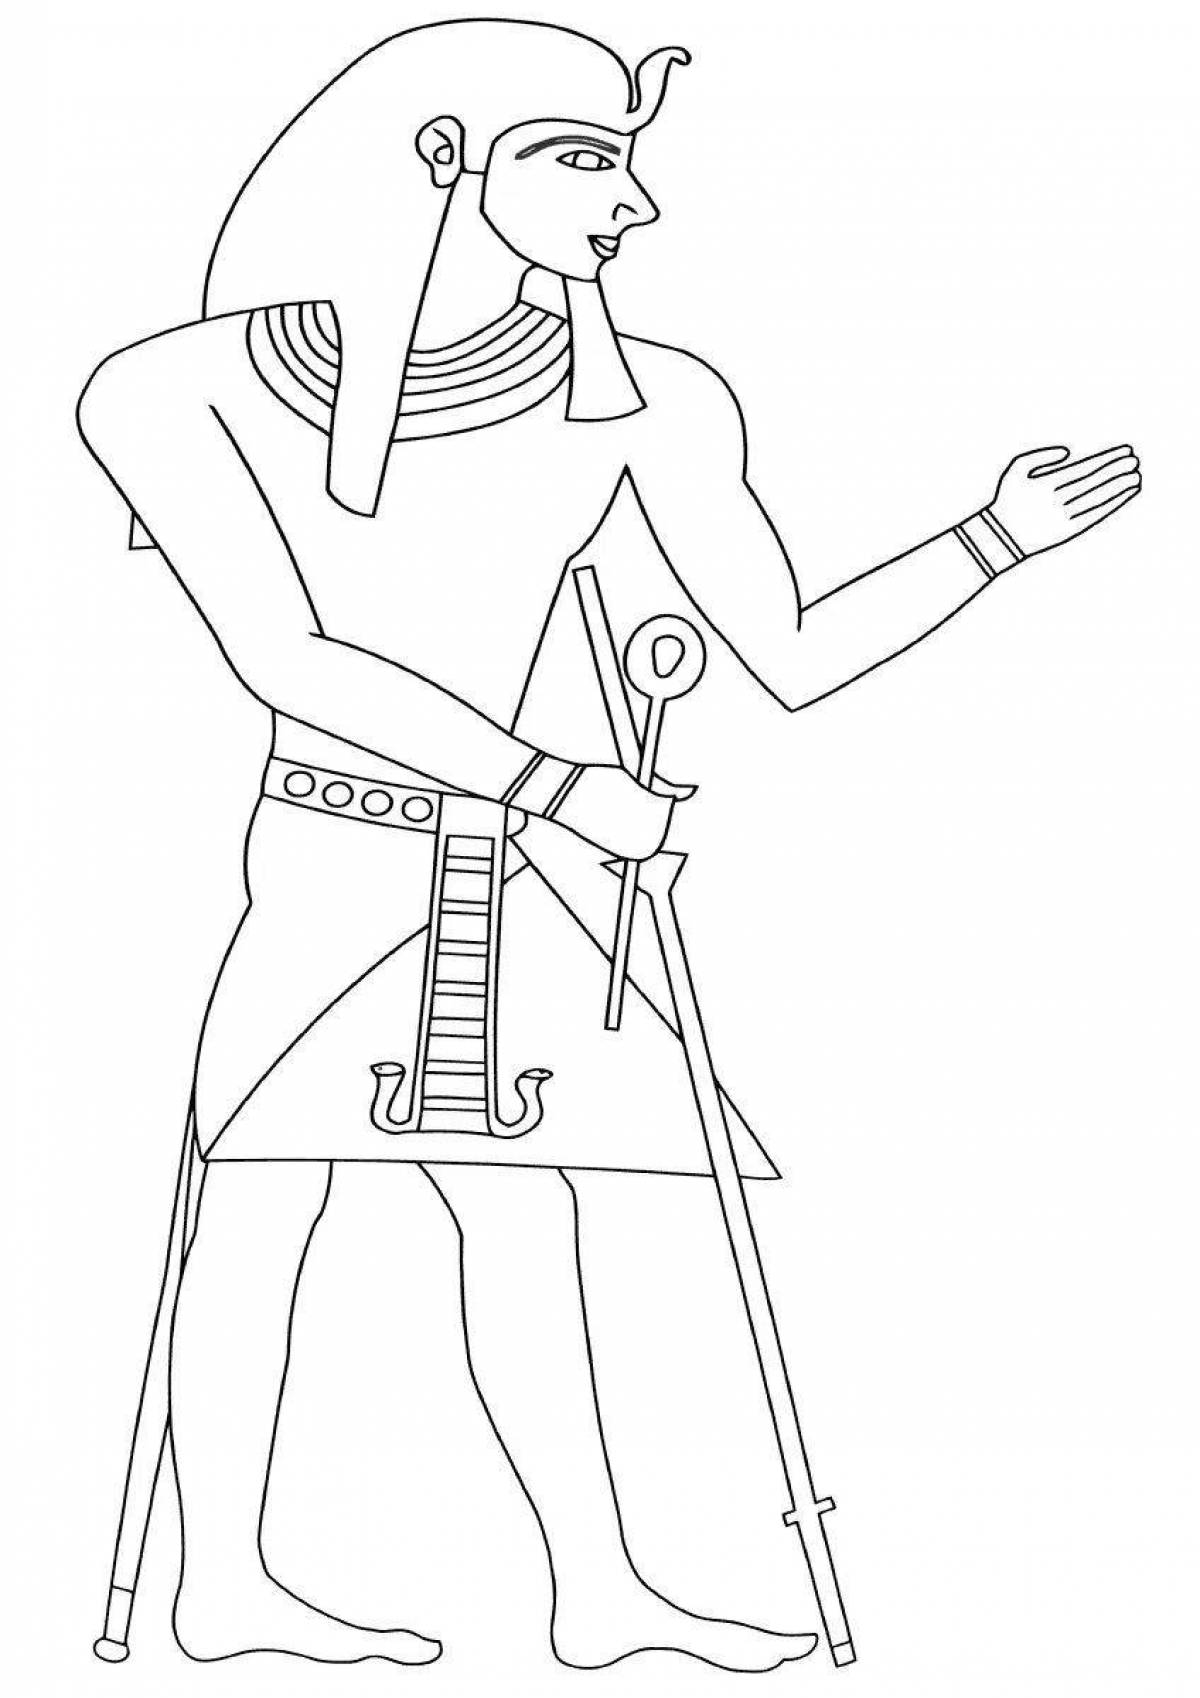 Coloring page elegant pharaoh